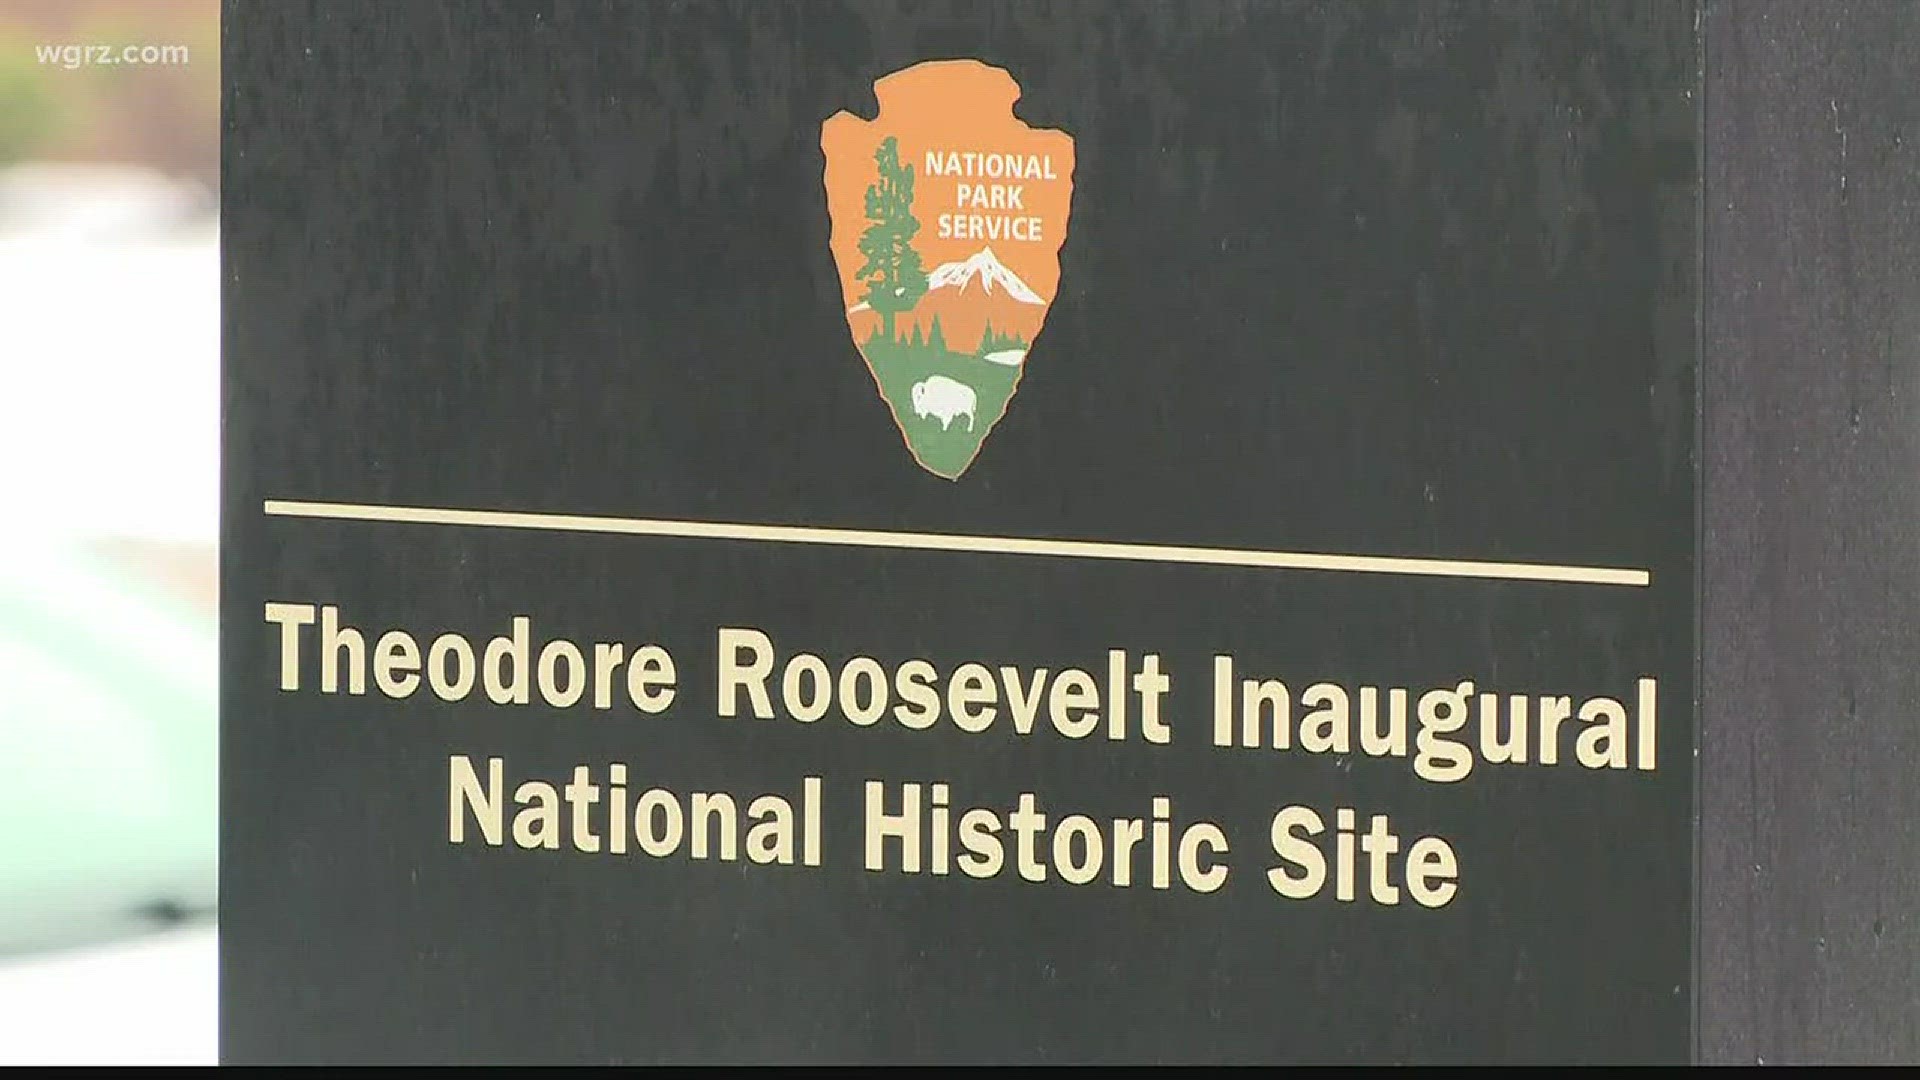 Teddy Roosevelt Site Open Despite Shutdown